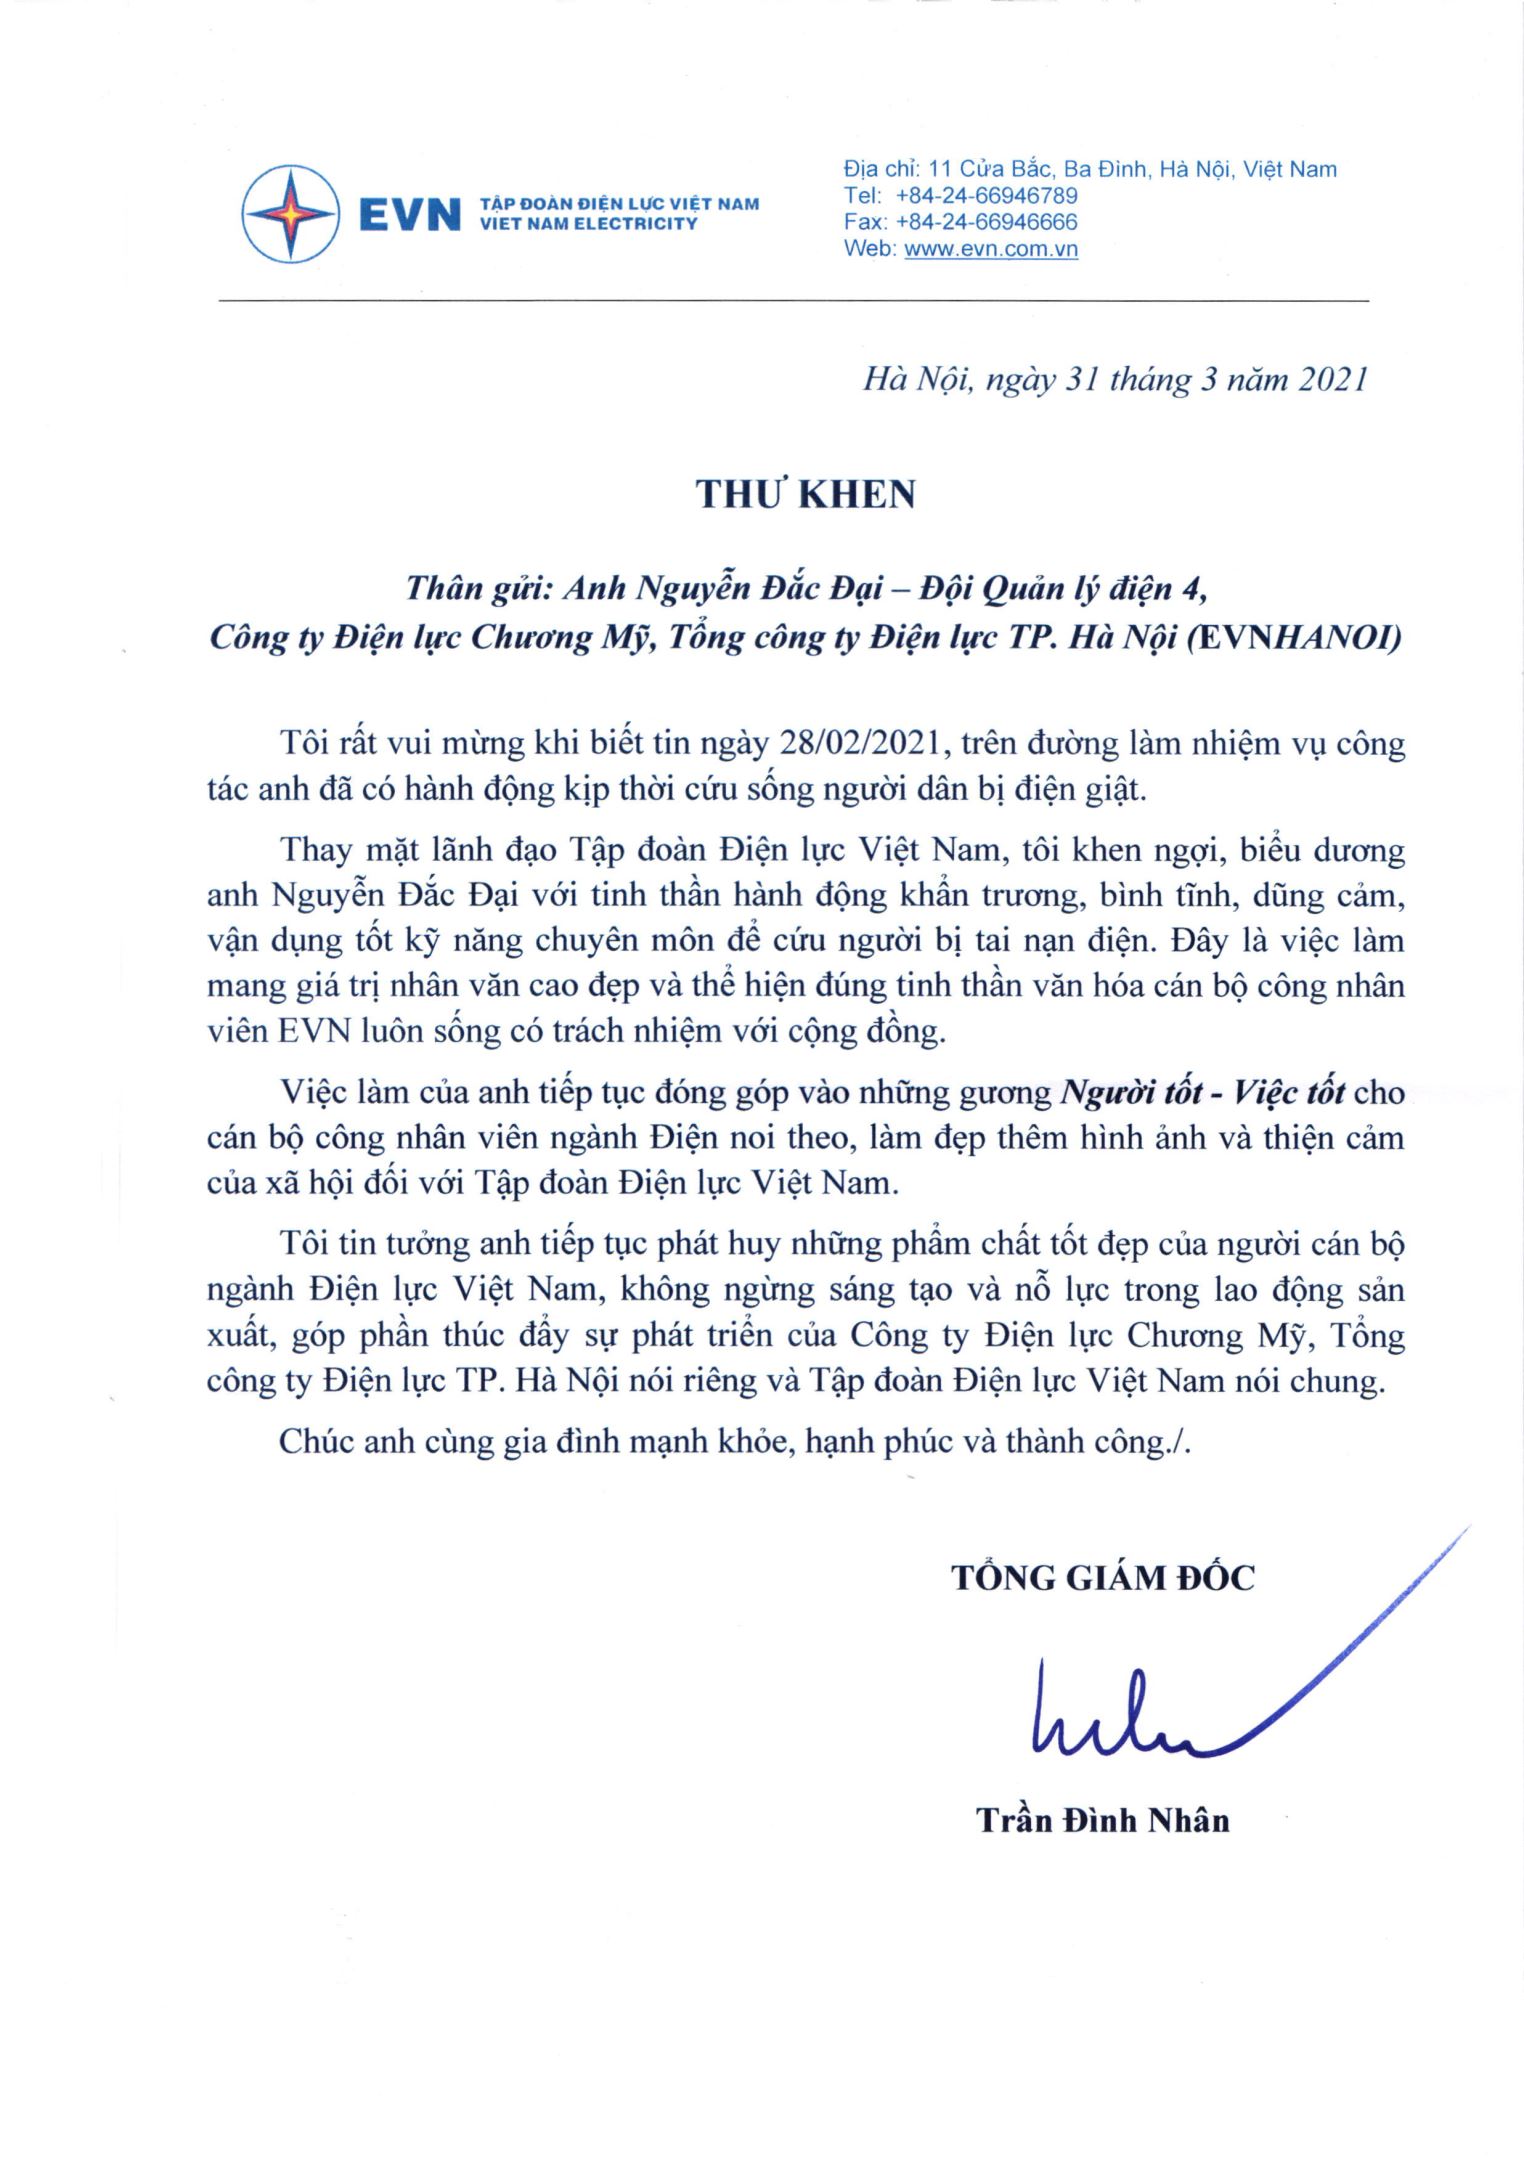 Tổng Giám đốc EVN gửi thư khen ngợi, biểu dương anh Nguyễn Đắc Đại